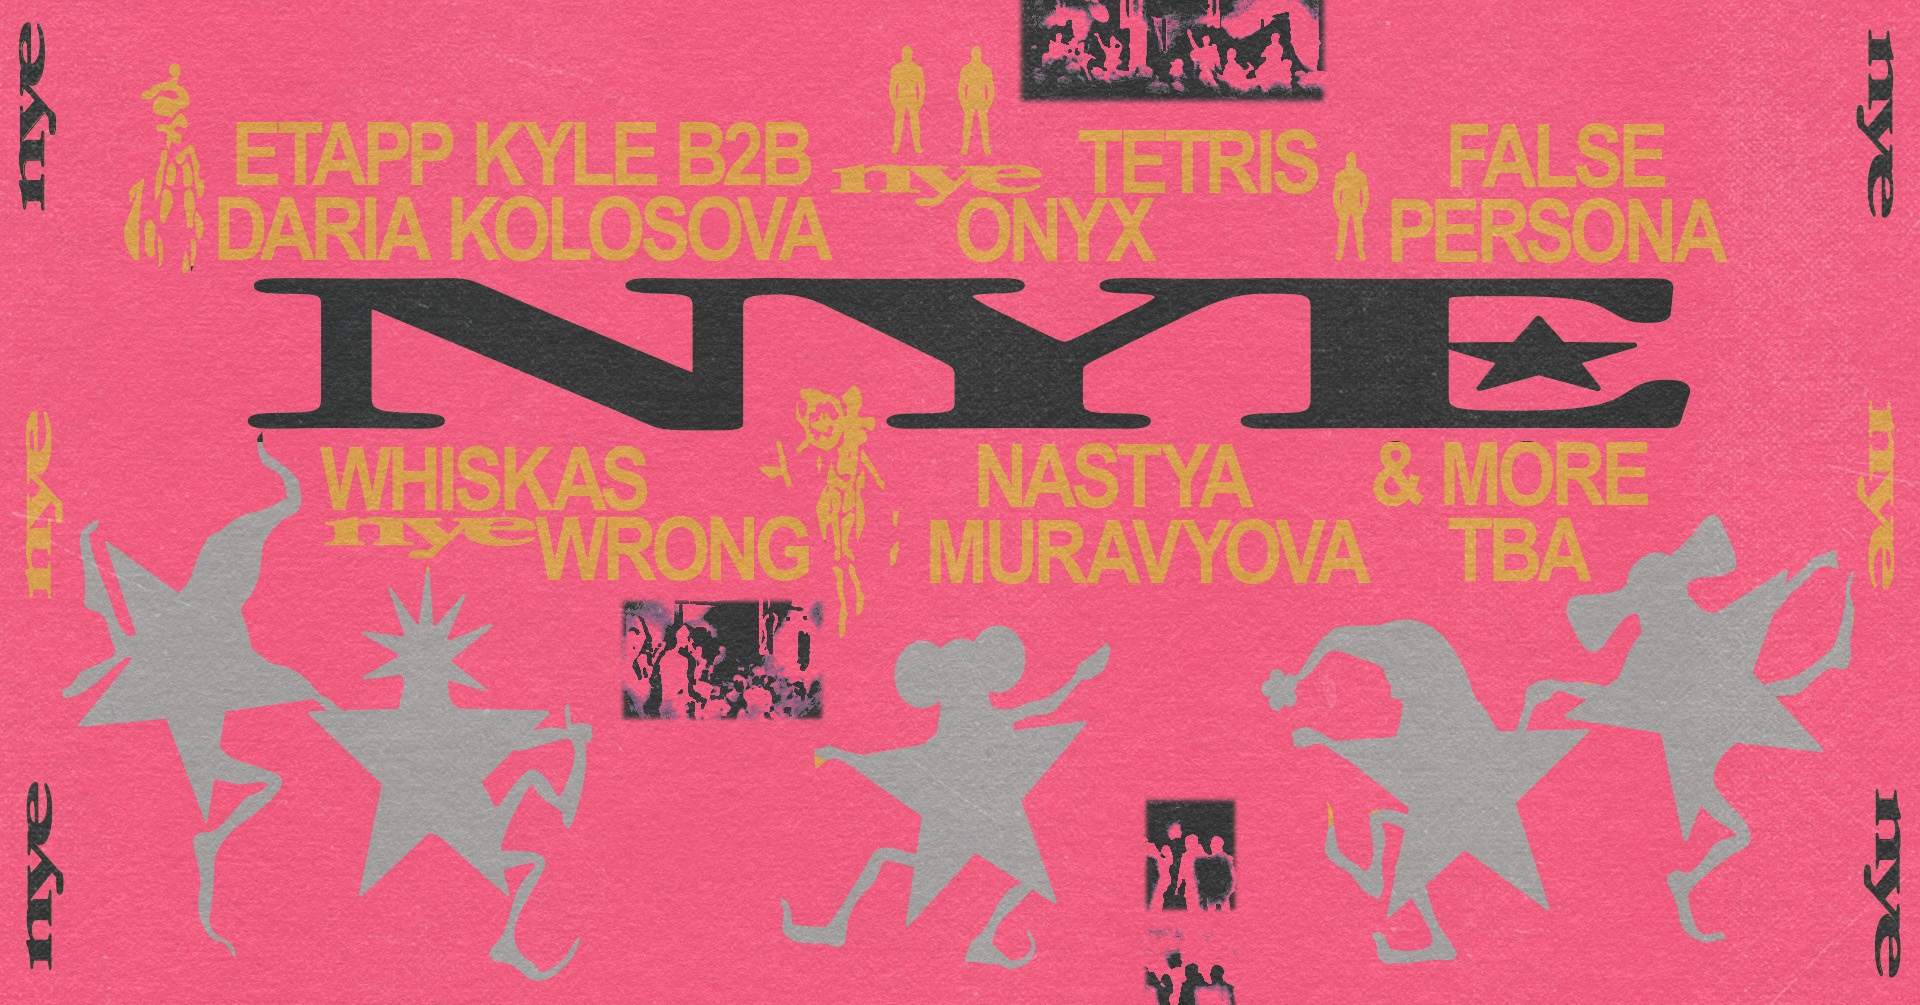 NYE: Daria Kolosova + Etapp Kyle + NASTYA MURAVYOVA + False Persona - Página frontal